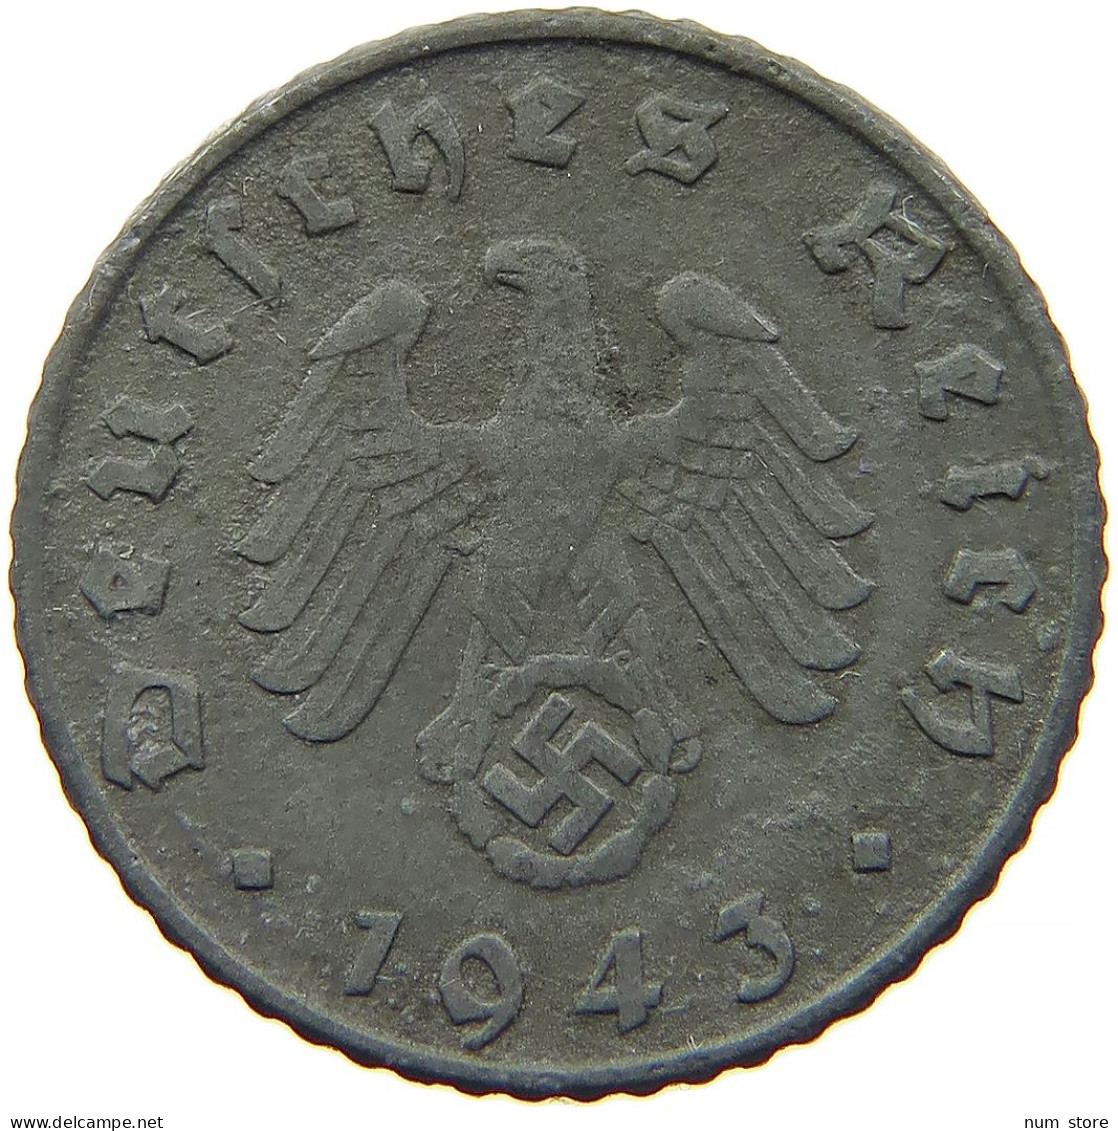 GERMANY 5 REICHSPFENNIG 1943 G #s091 0813 - 5 Reichspfennig